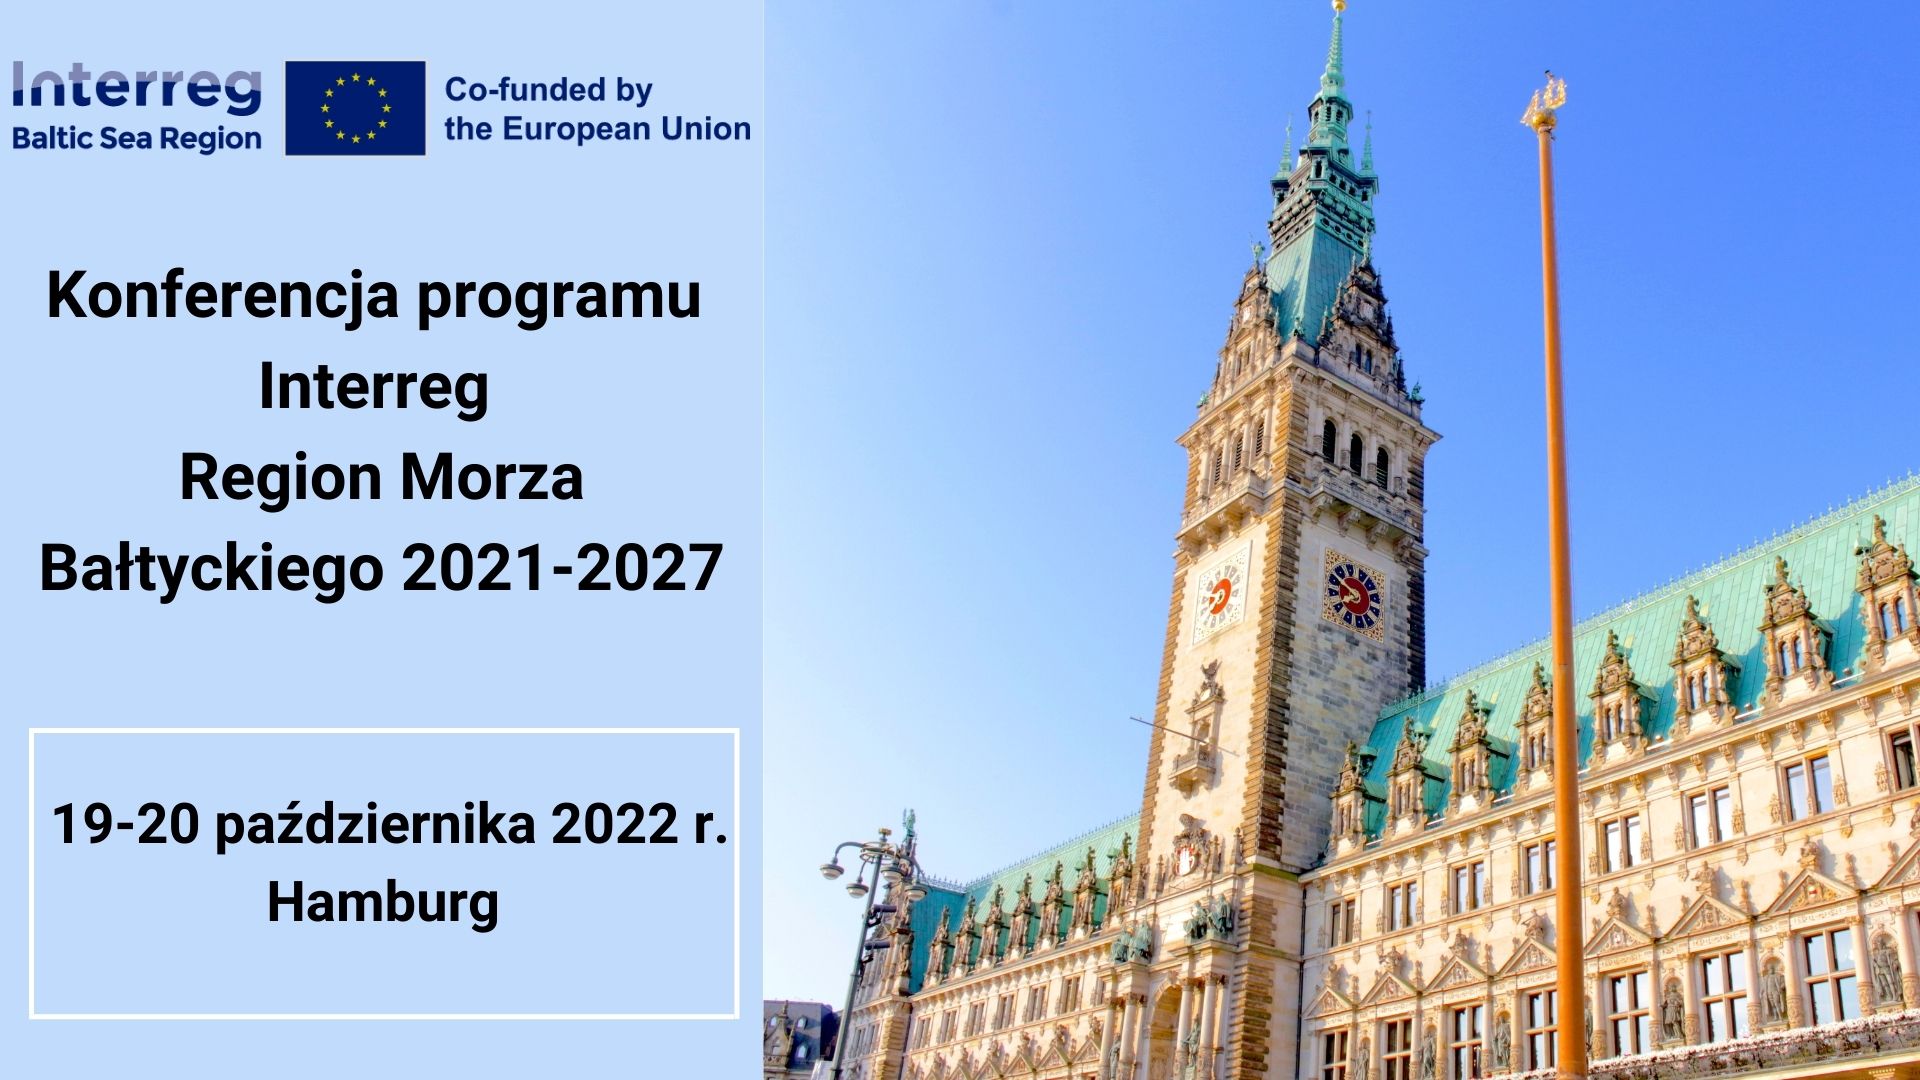 Zapraszamy na konferencję programu Interreg Region Morza Bałtyckiego 2021-2027, która odbędzie się w dniach 19-20 października 2022 r. w Hamburgu